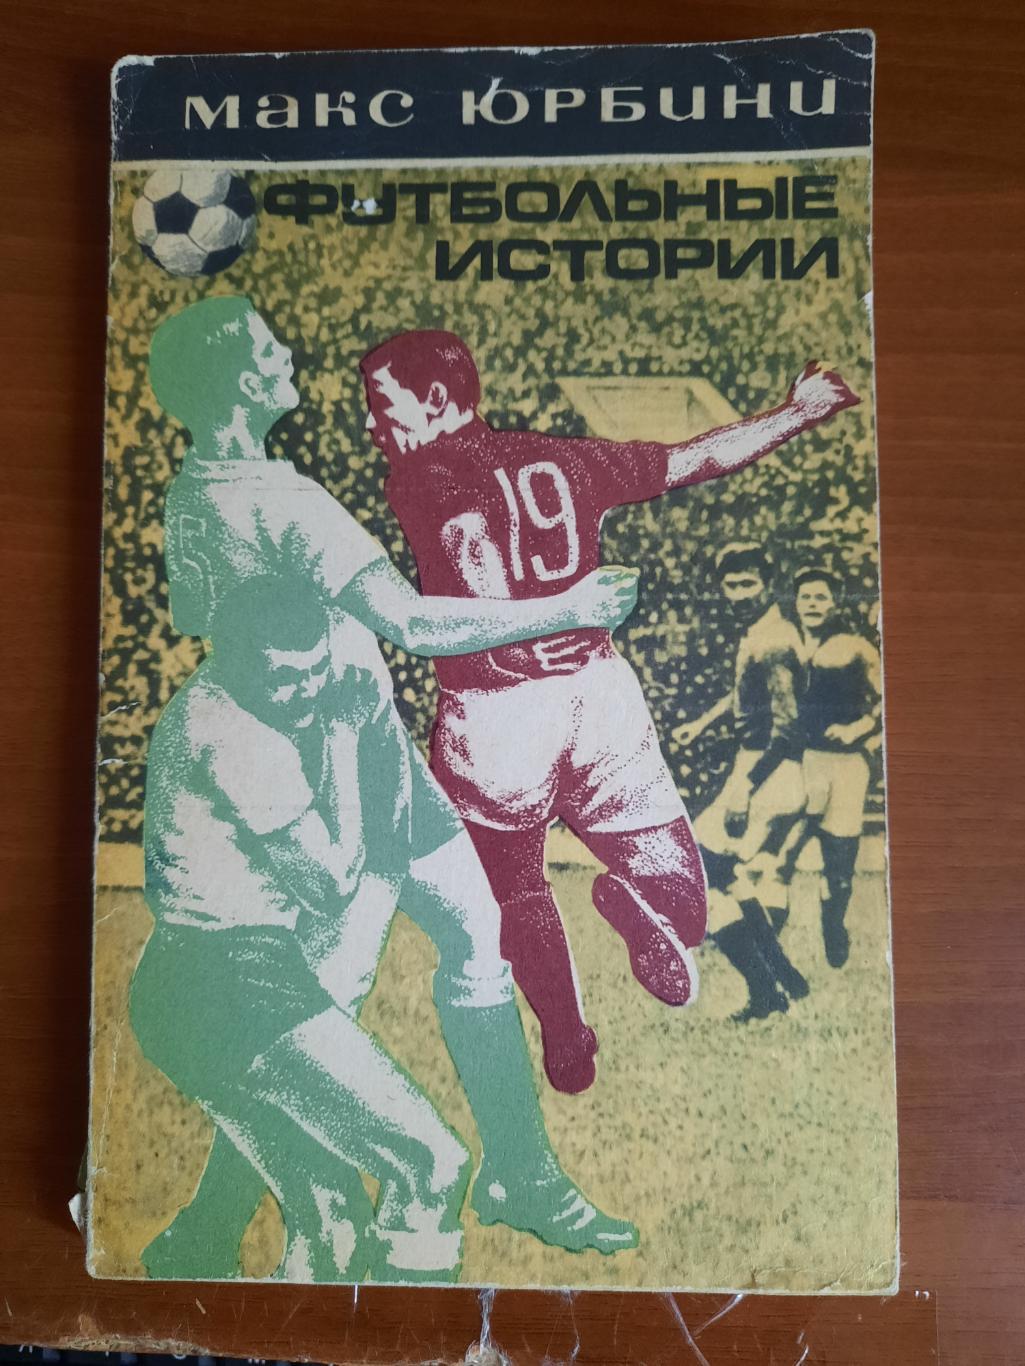 Макси Юрбини Футбольные истории (Москва, 1973)